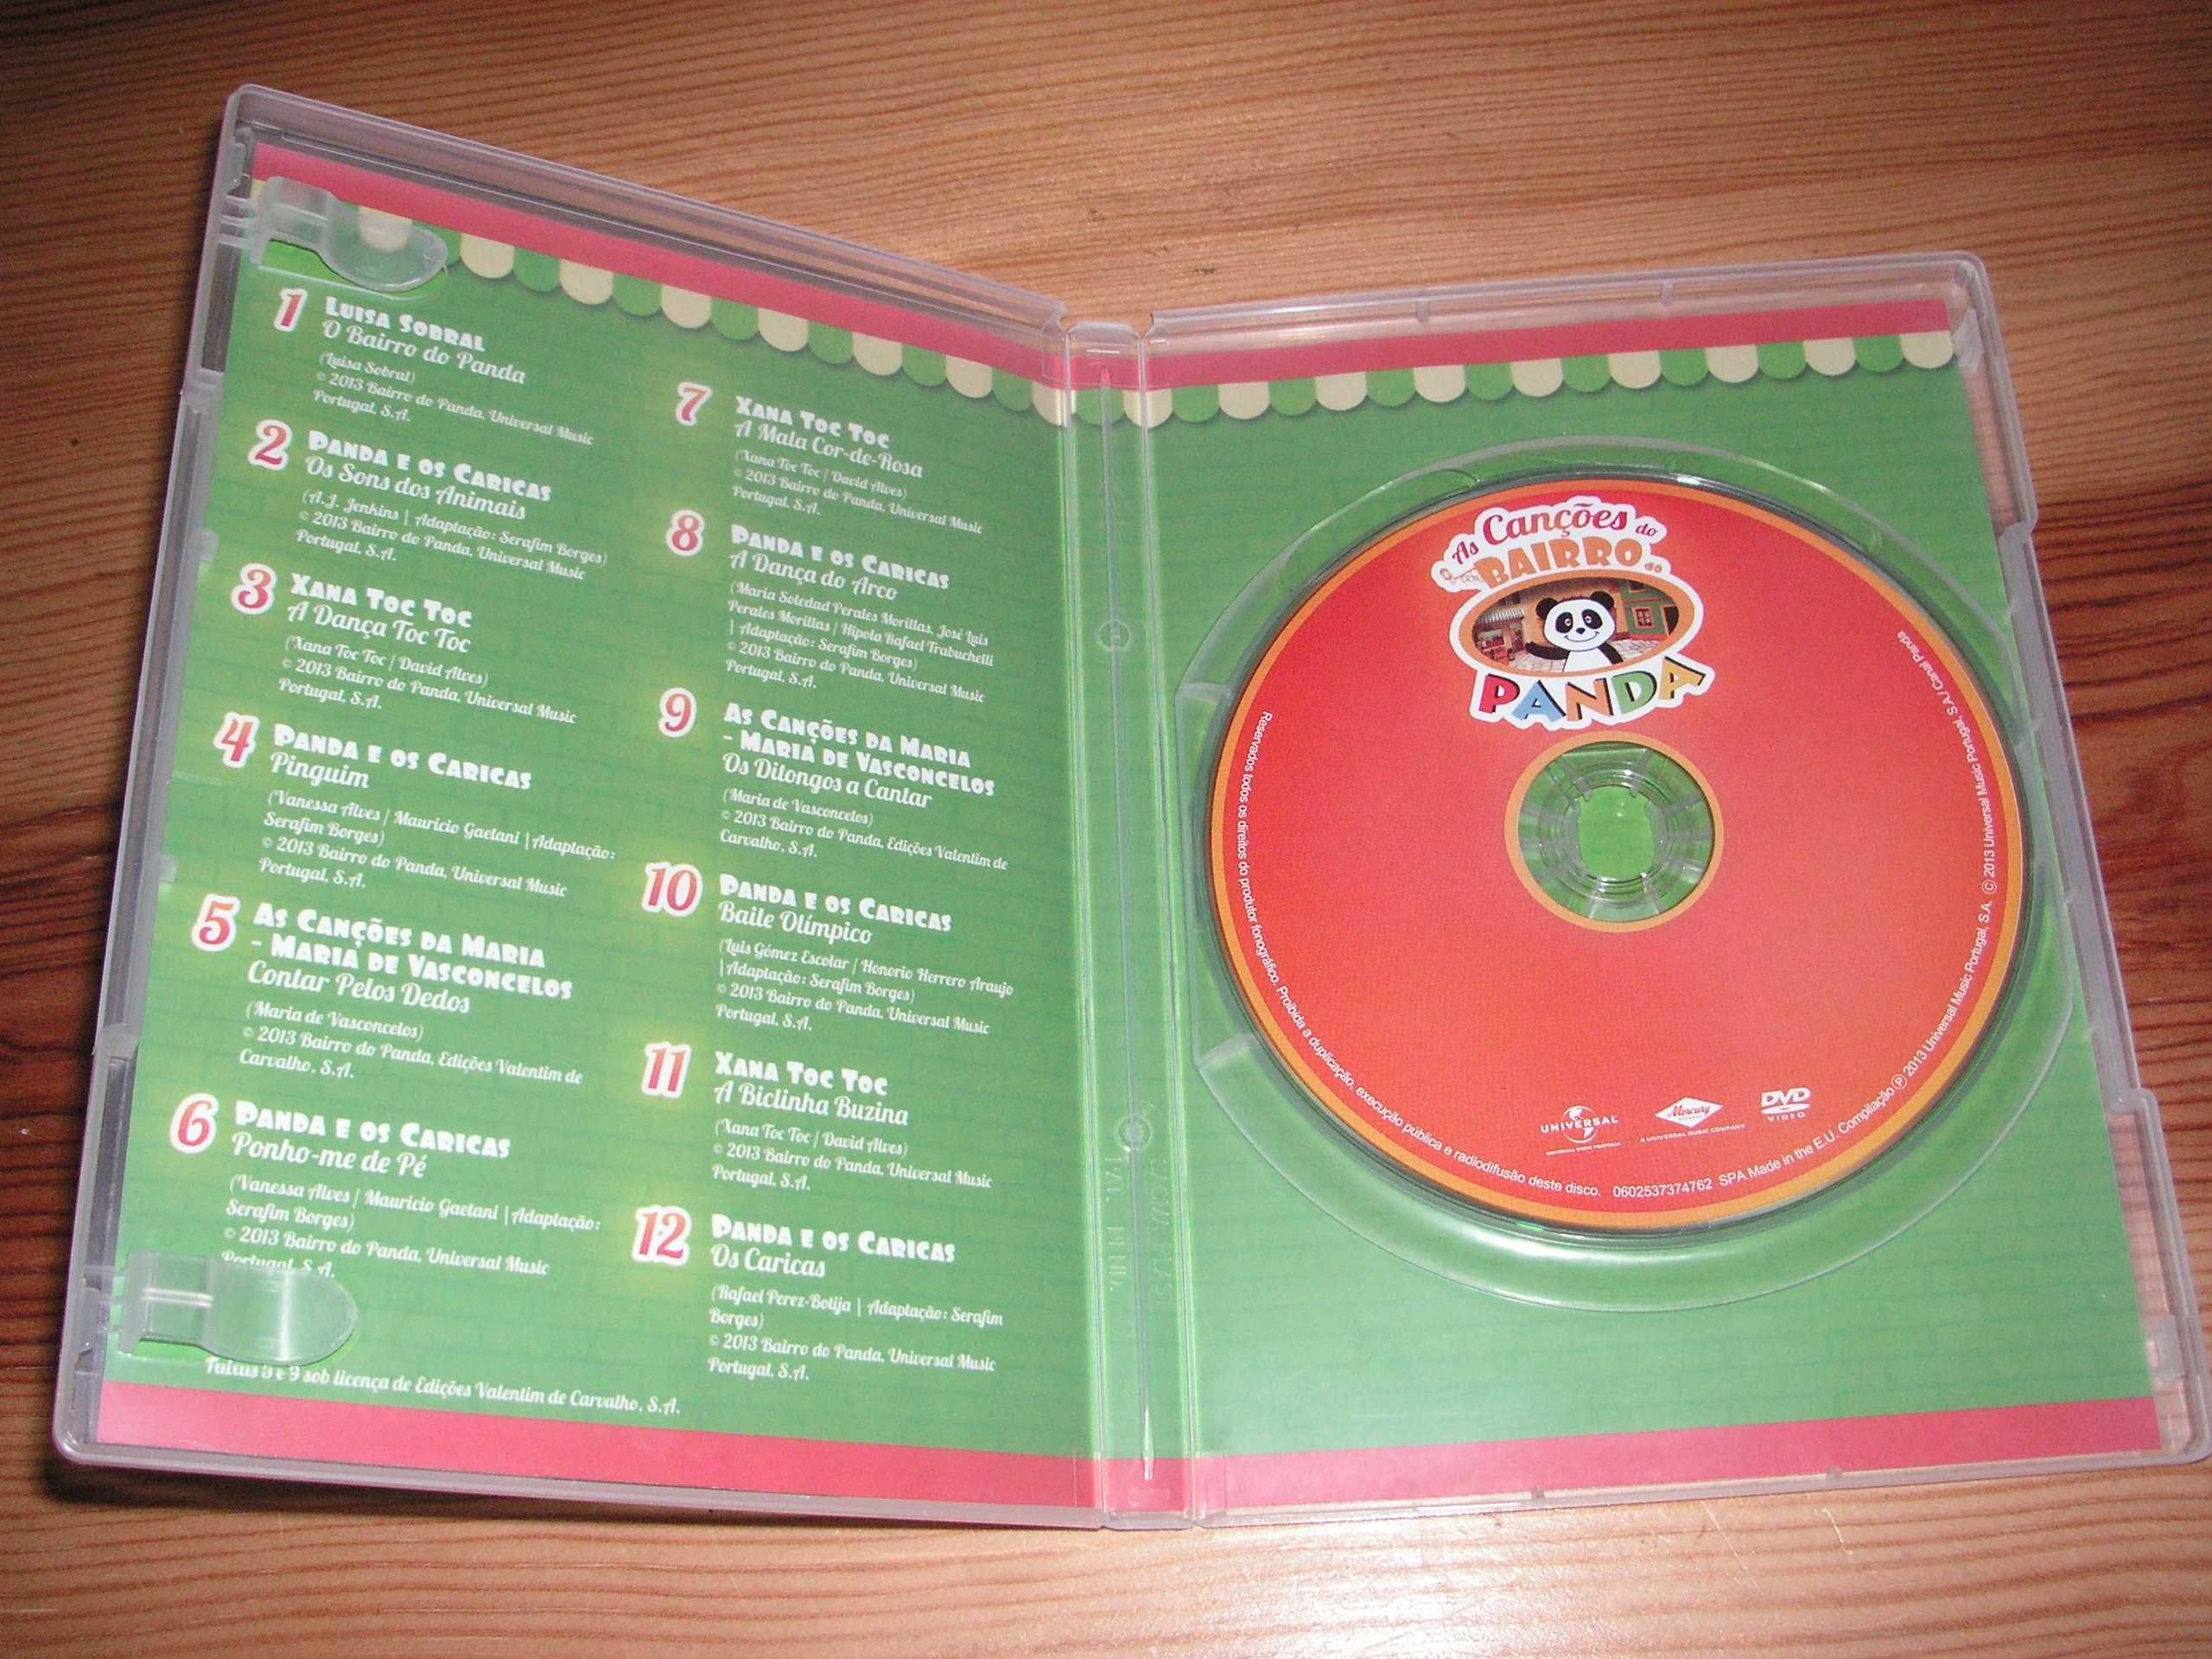 DVD As Canções do Bairro Panda